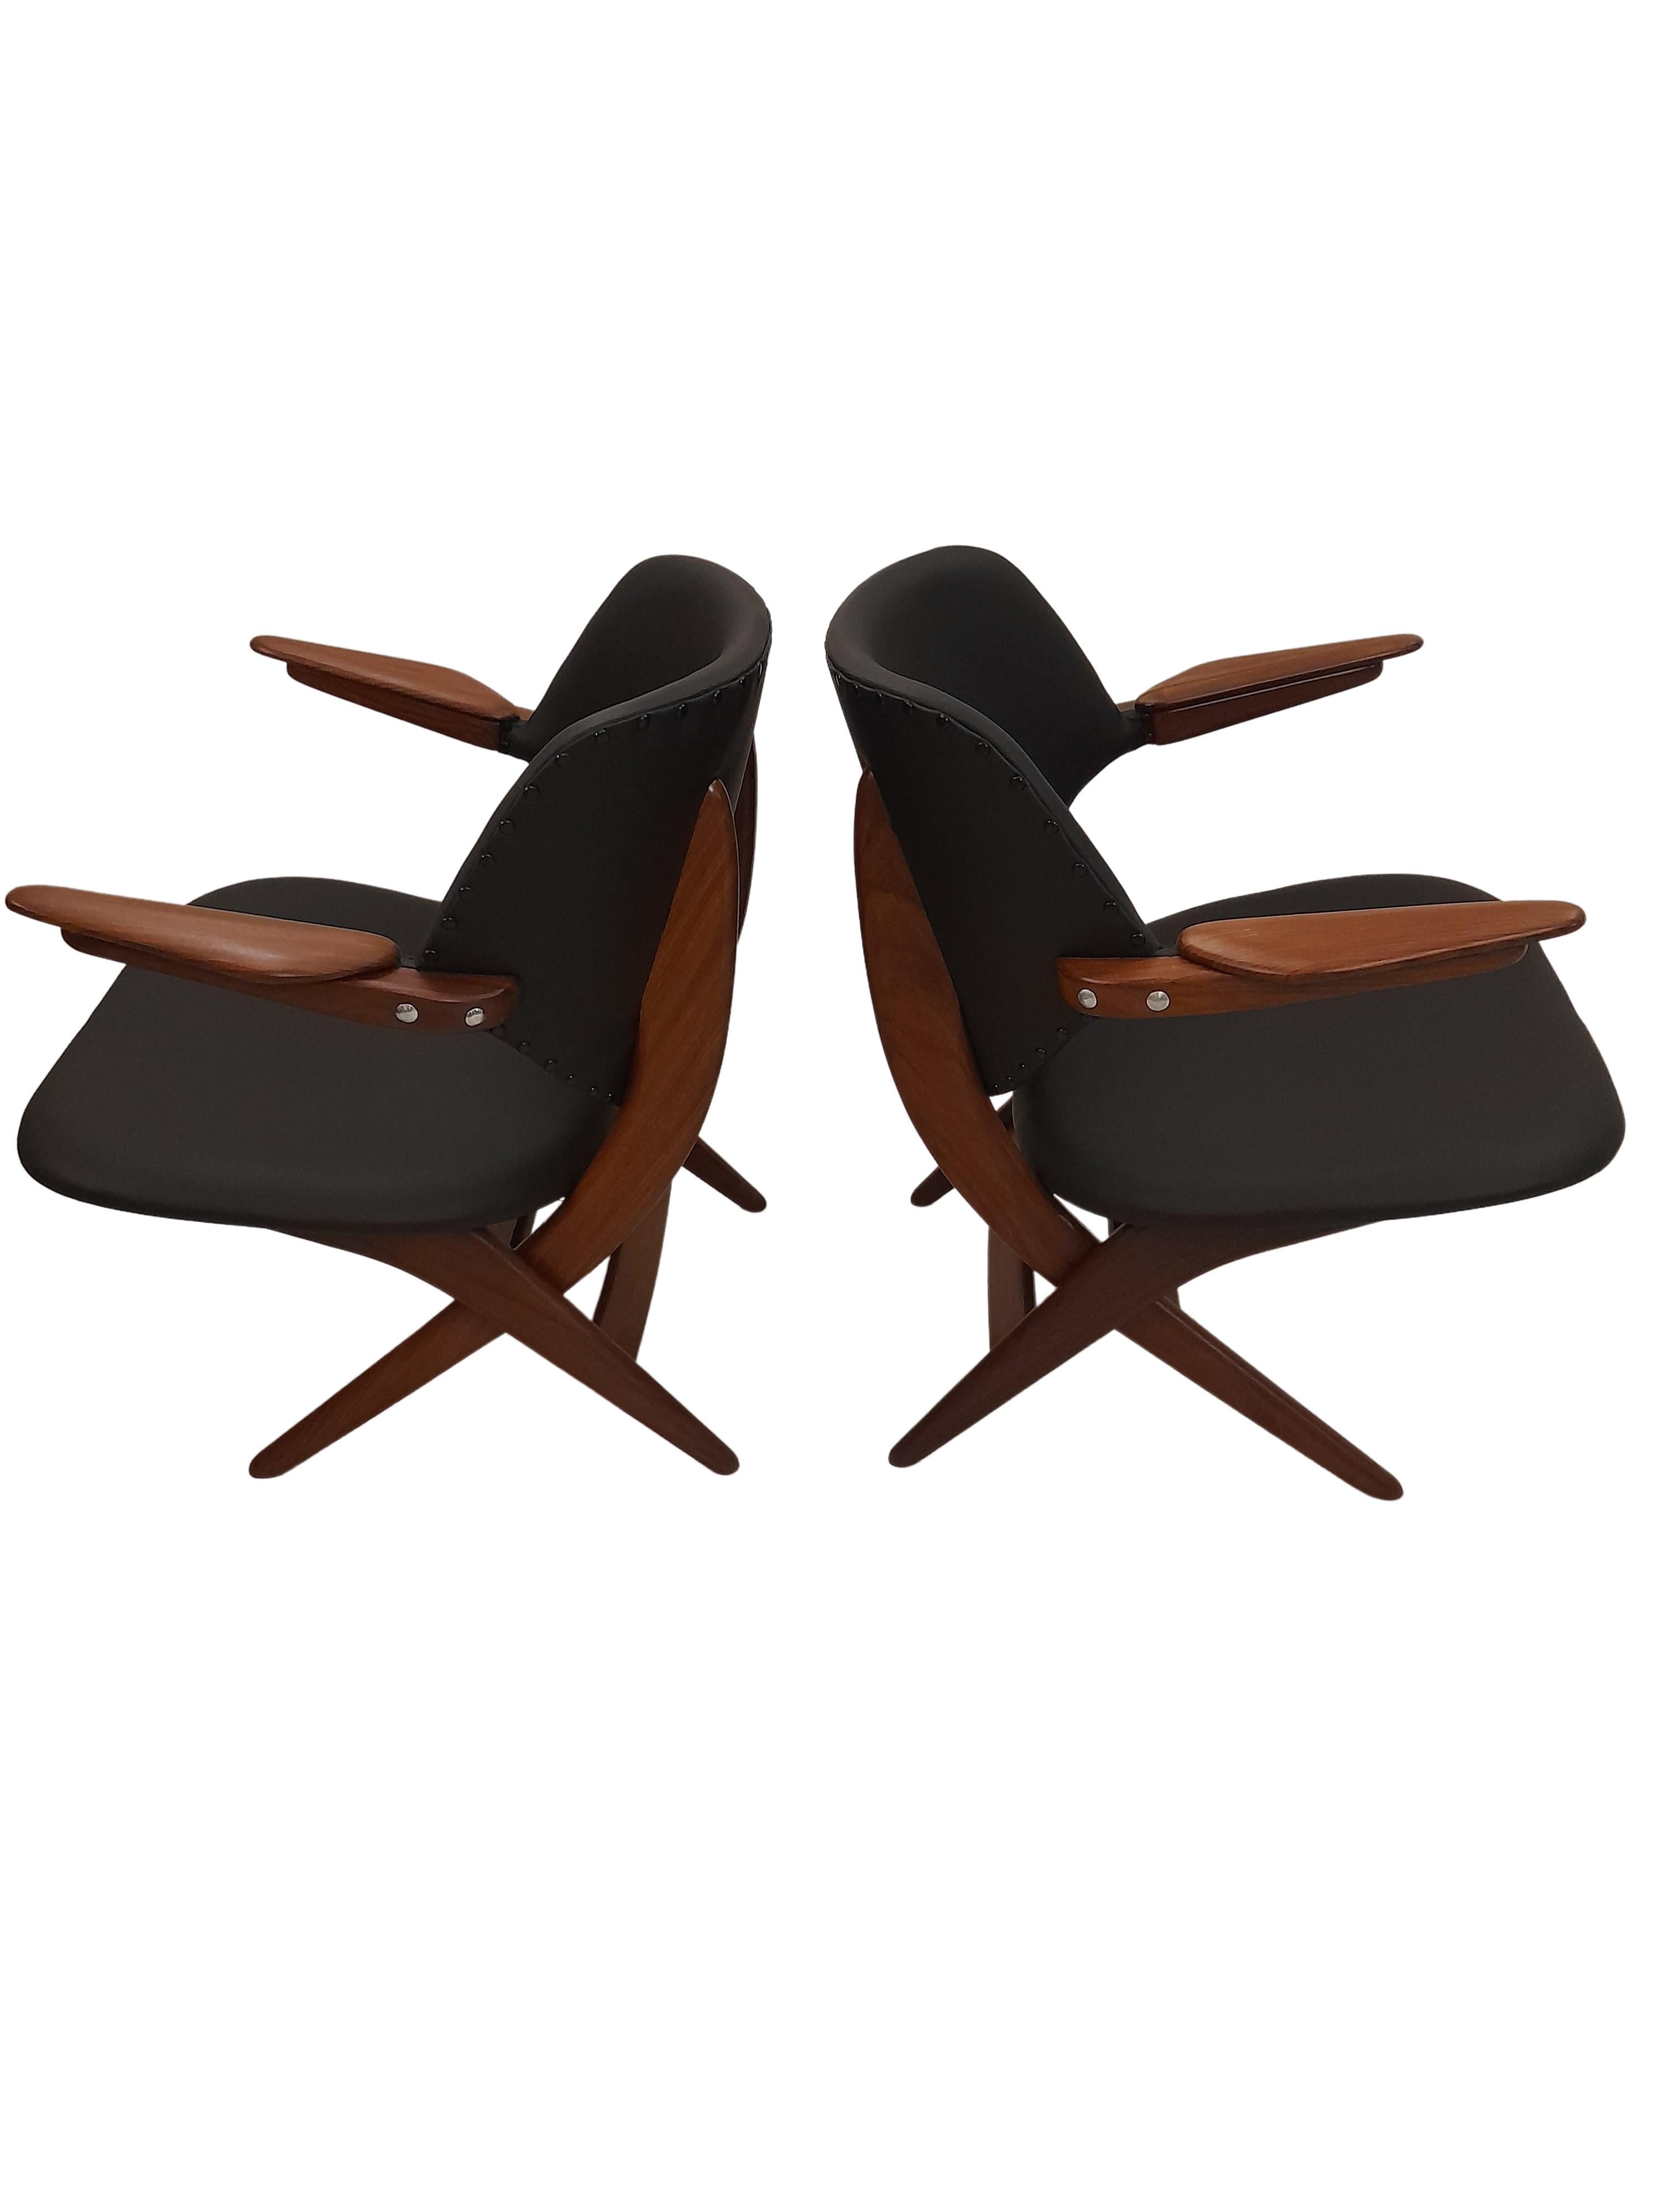 Set of 2 Louis Van Teeffelen Pelican Armchairs for Webe in Black Leather, 1960s 3